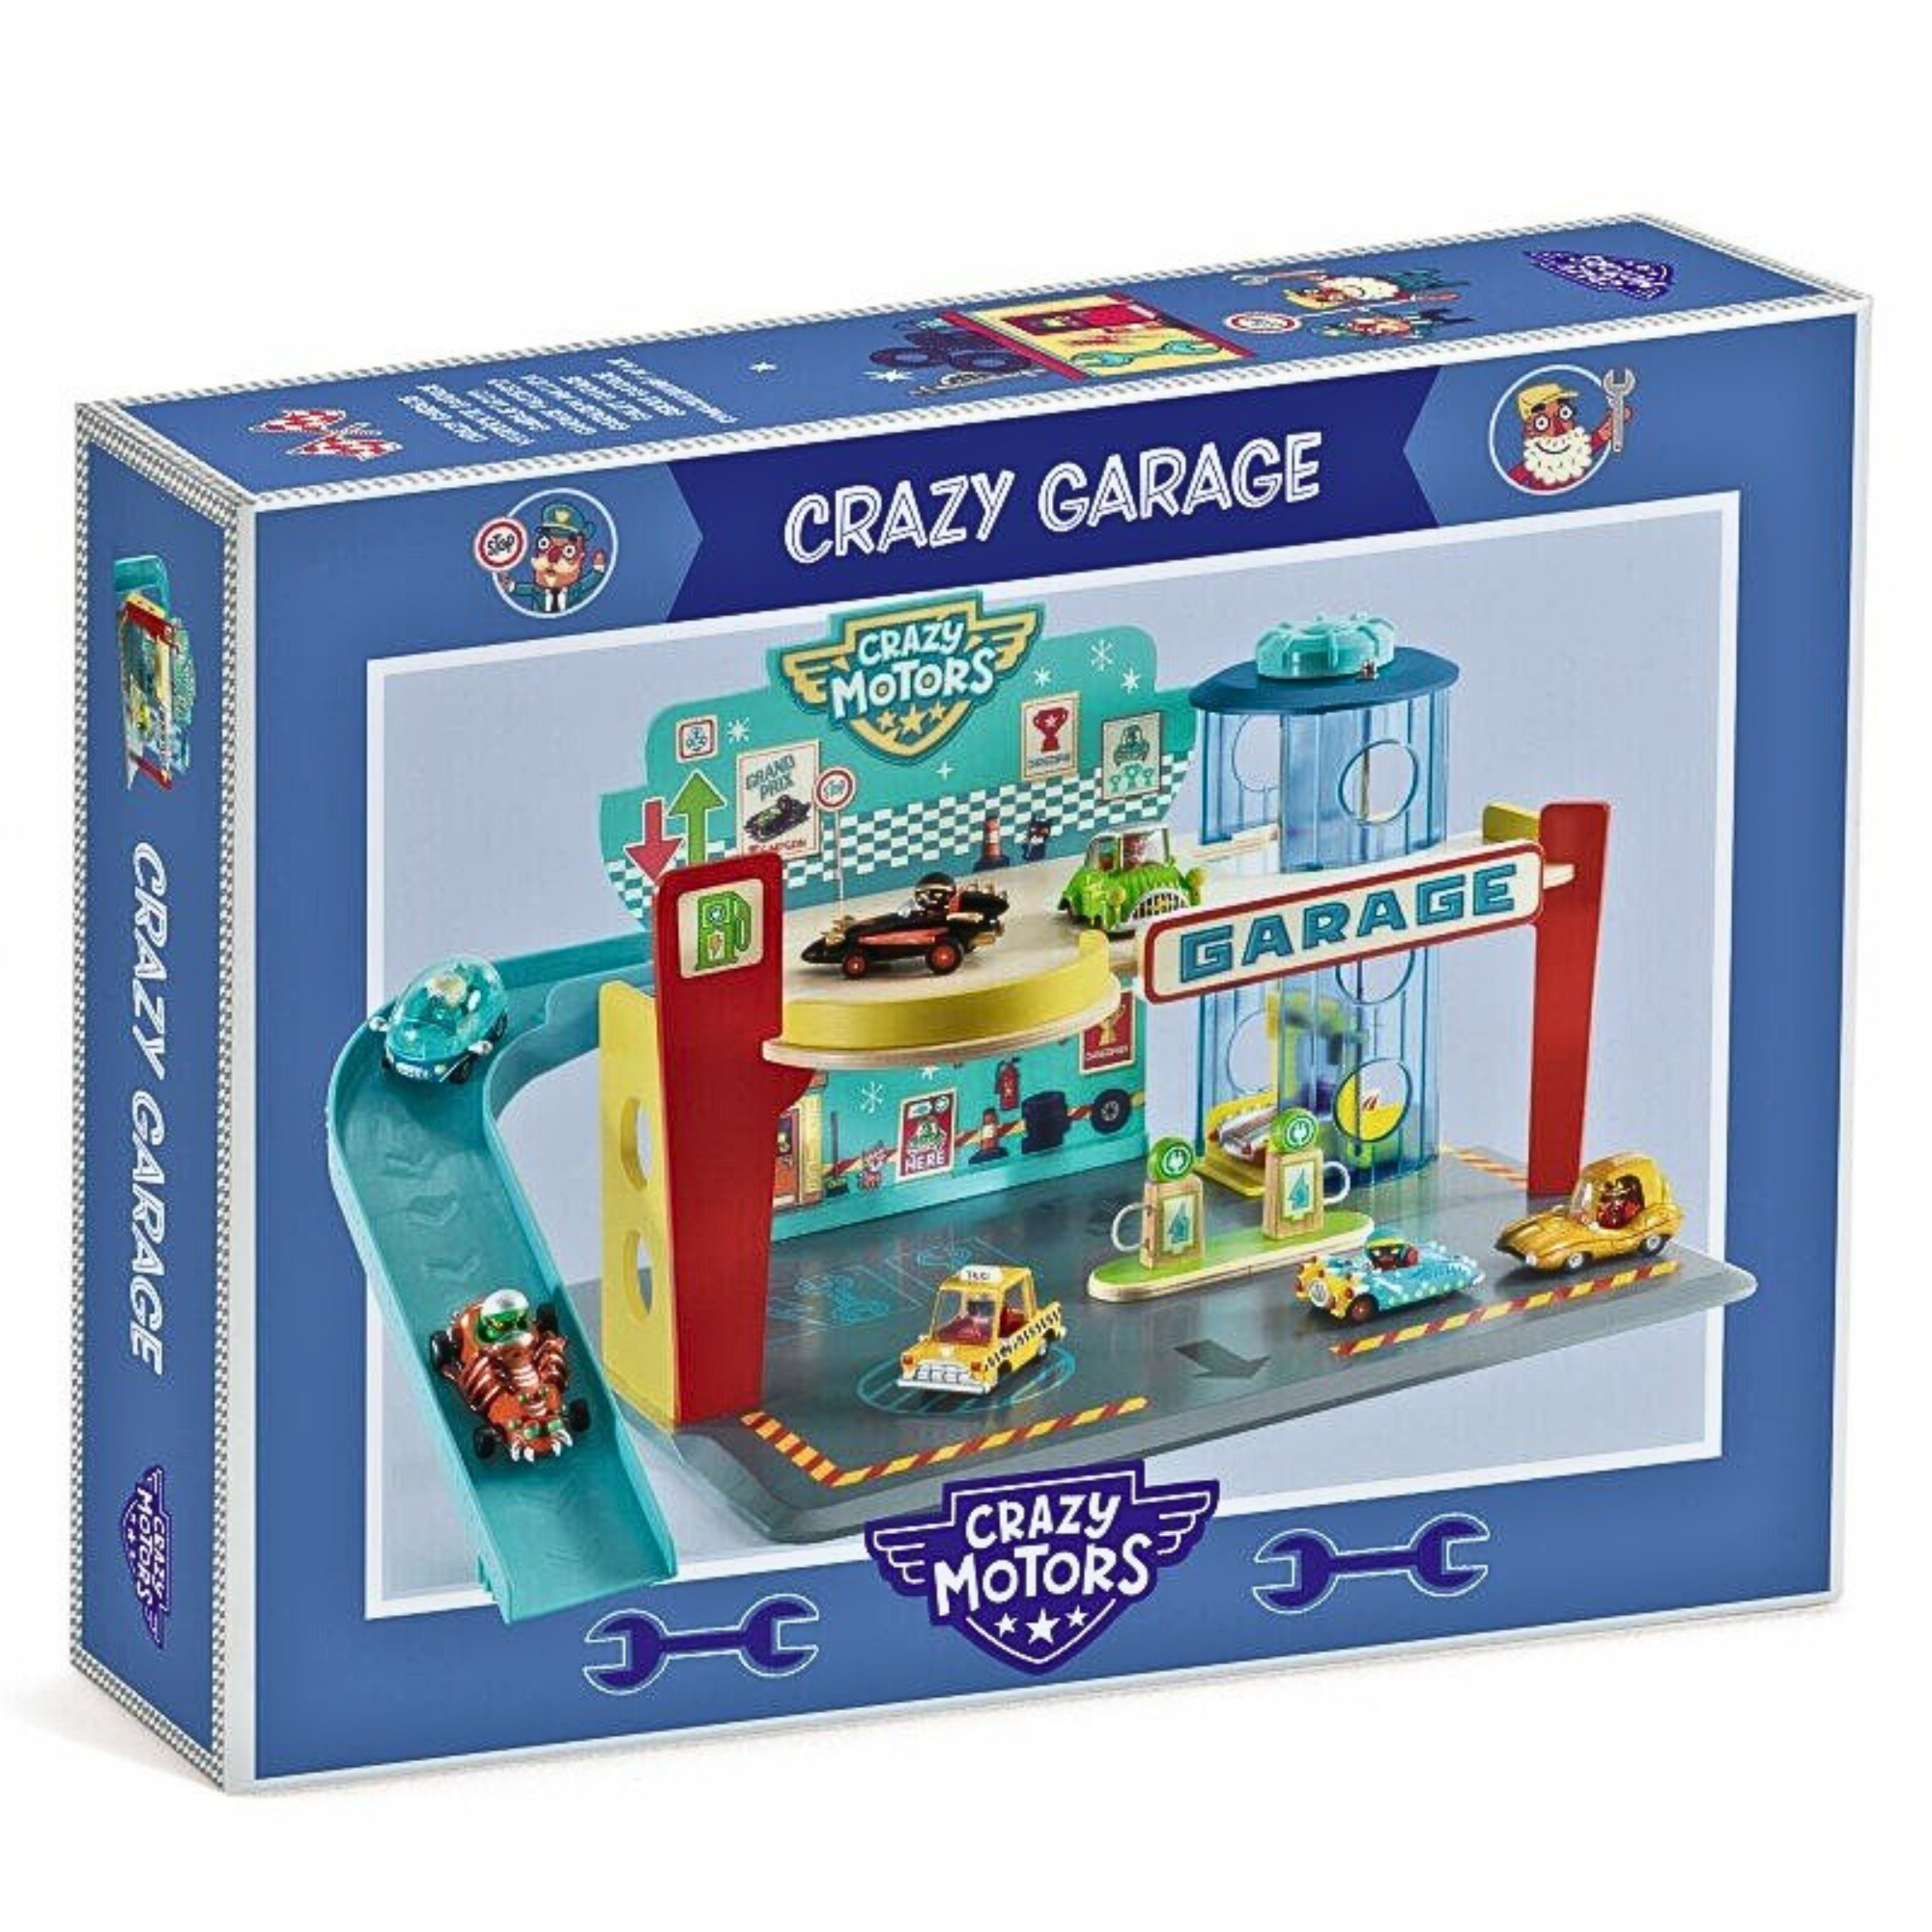 Garage - Crazy motors